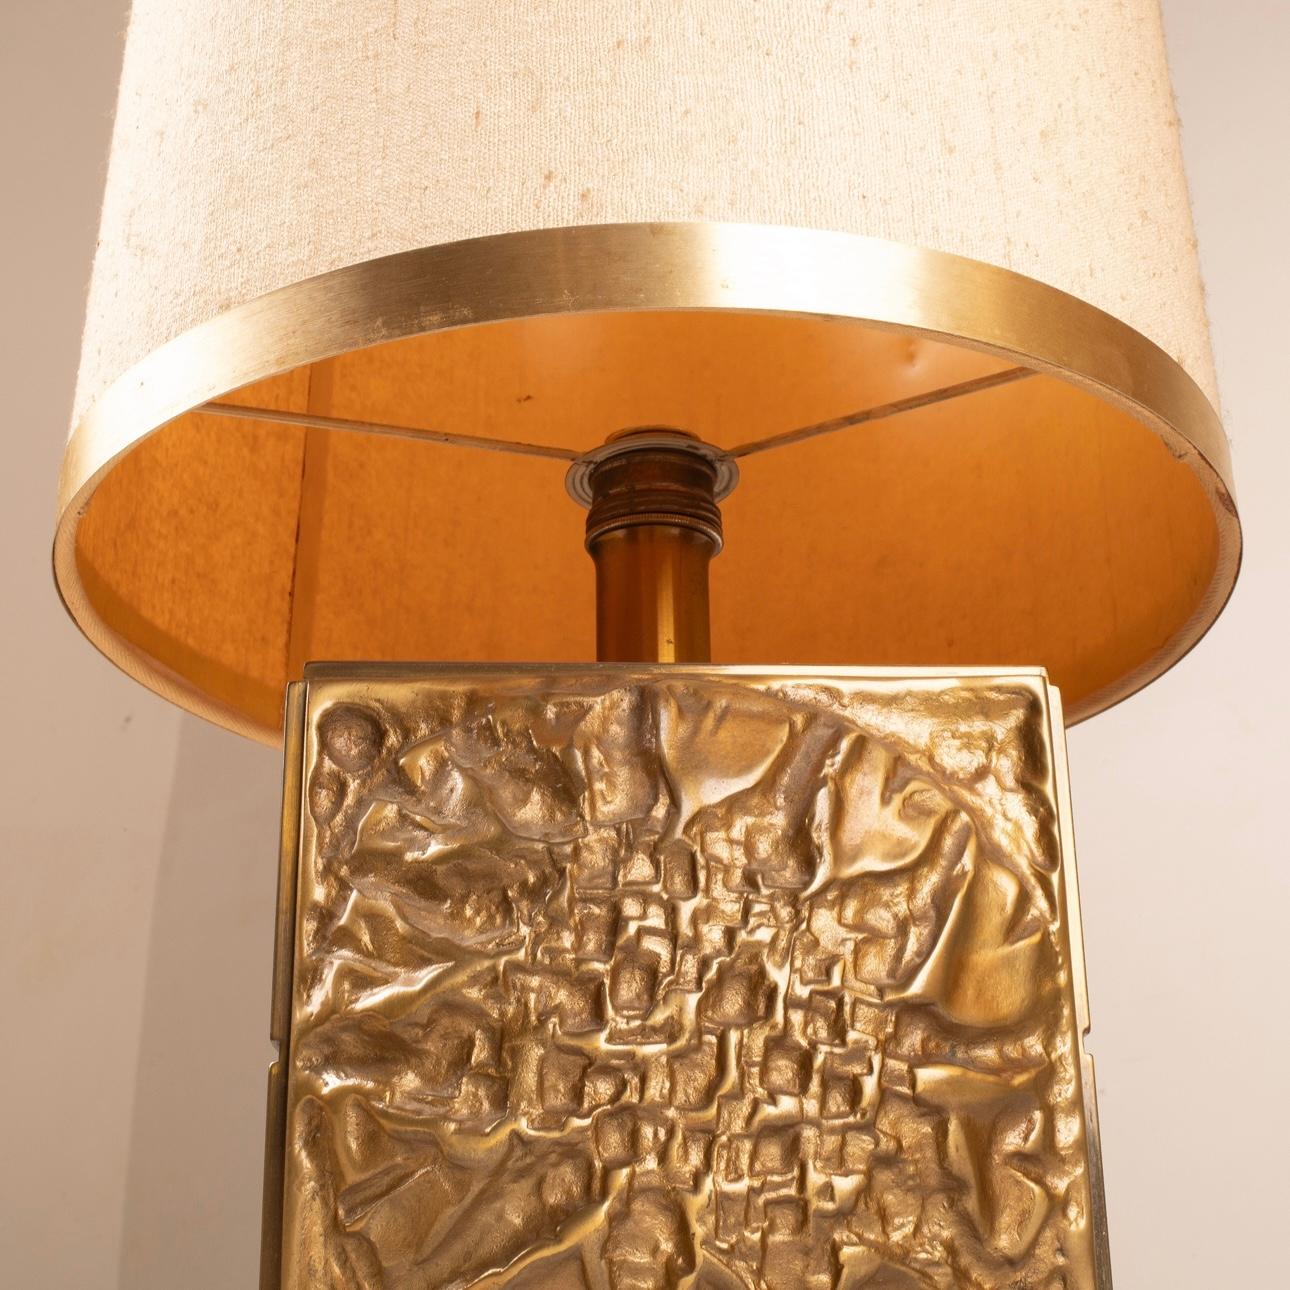 Une extraordinaire paire de lampes de table en laiton moulé au design brutaliste évocateur, signée par le célèbre designer Luciano Frigerio pour l'illustre marque Frigerio de Desio dans les années 1970.
Ces lampes, dans un état impeccable,